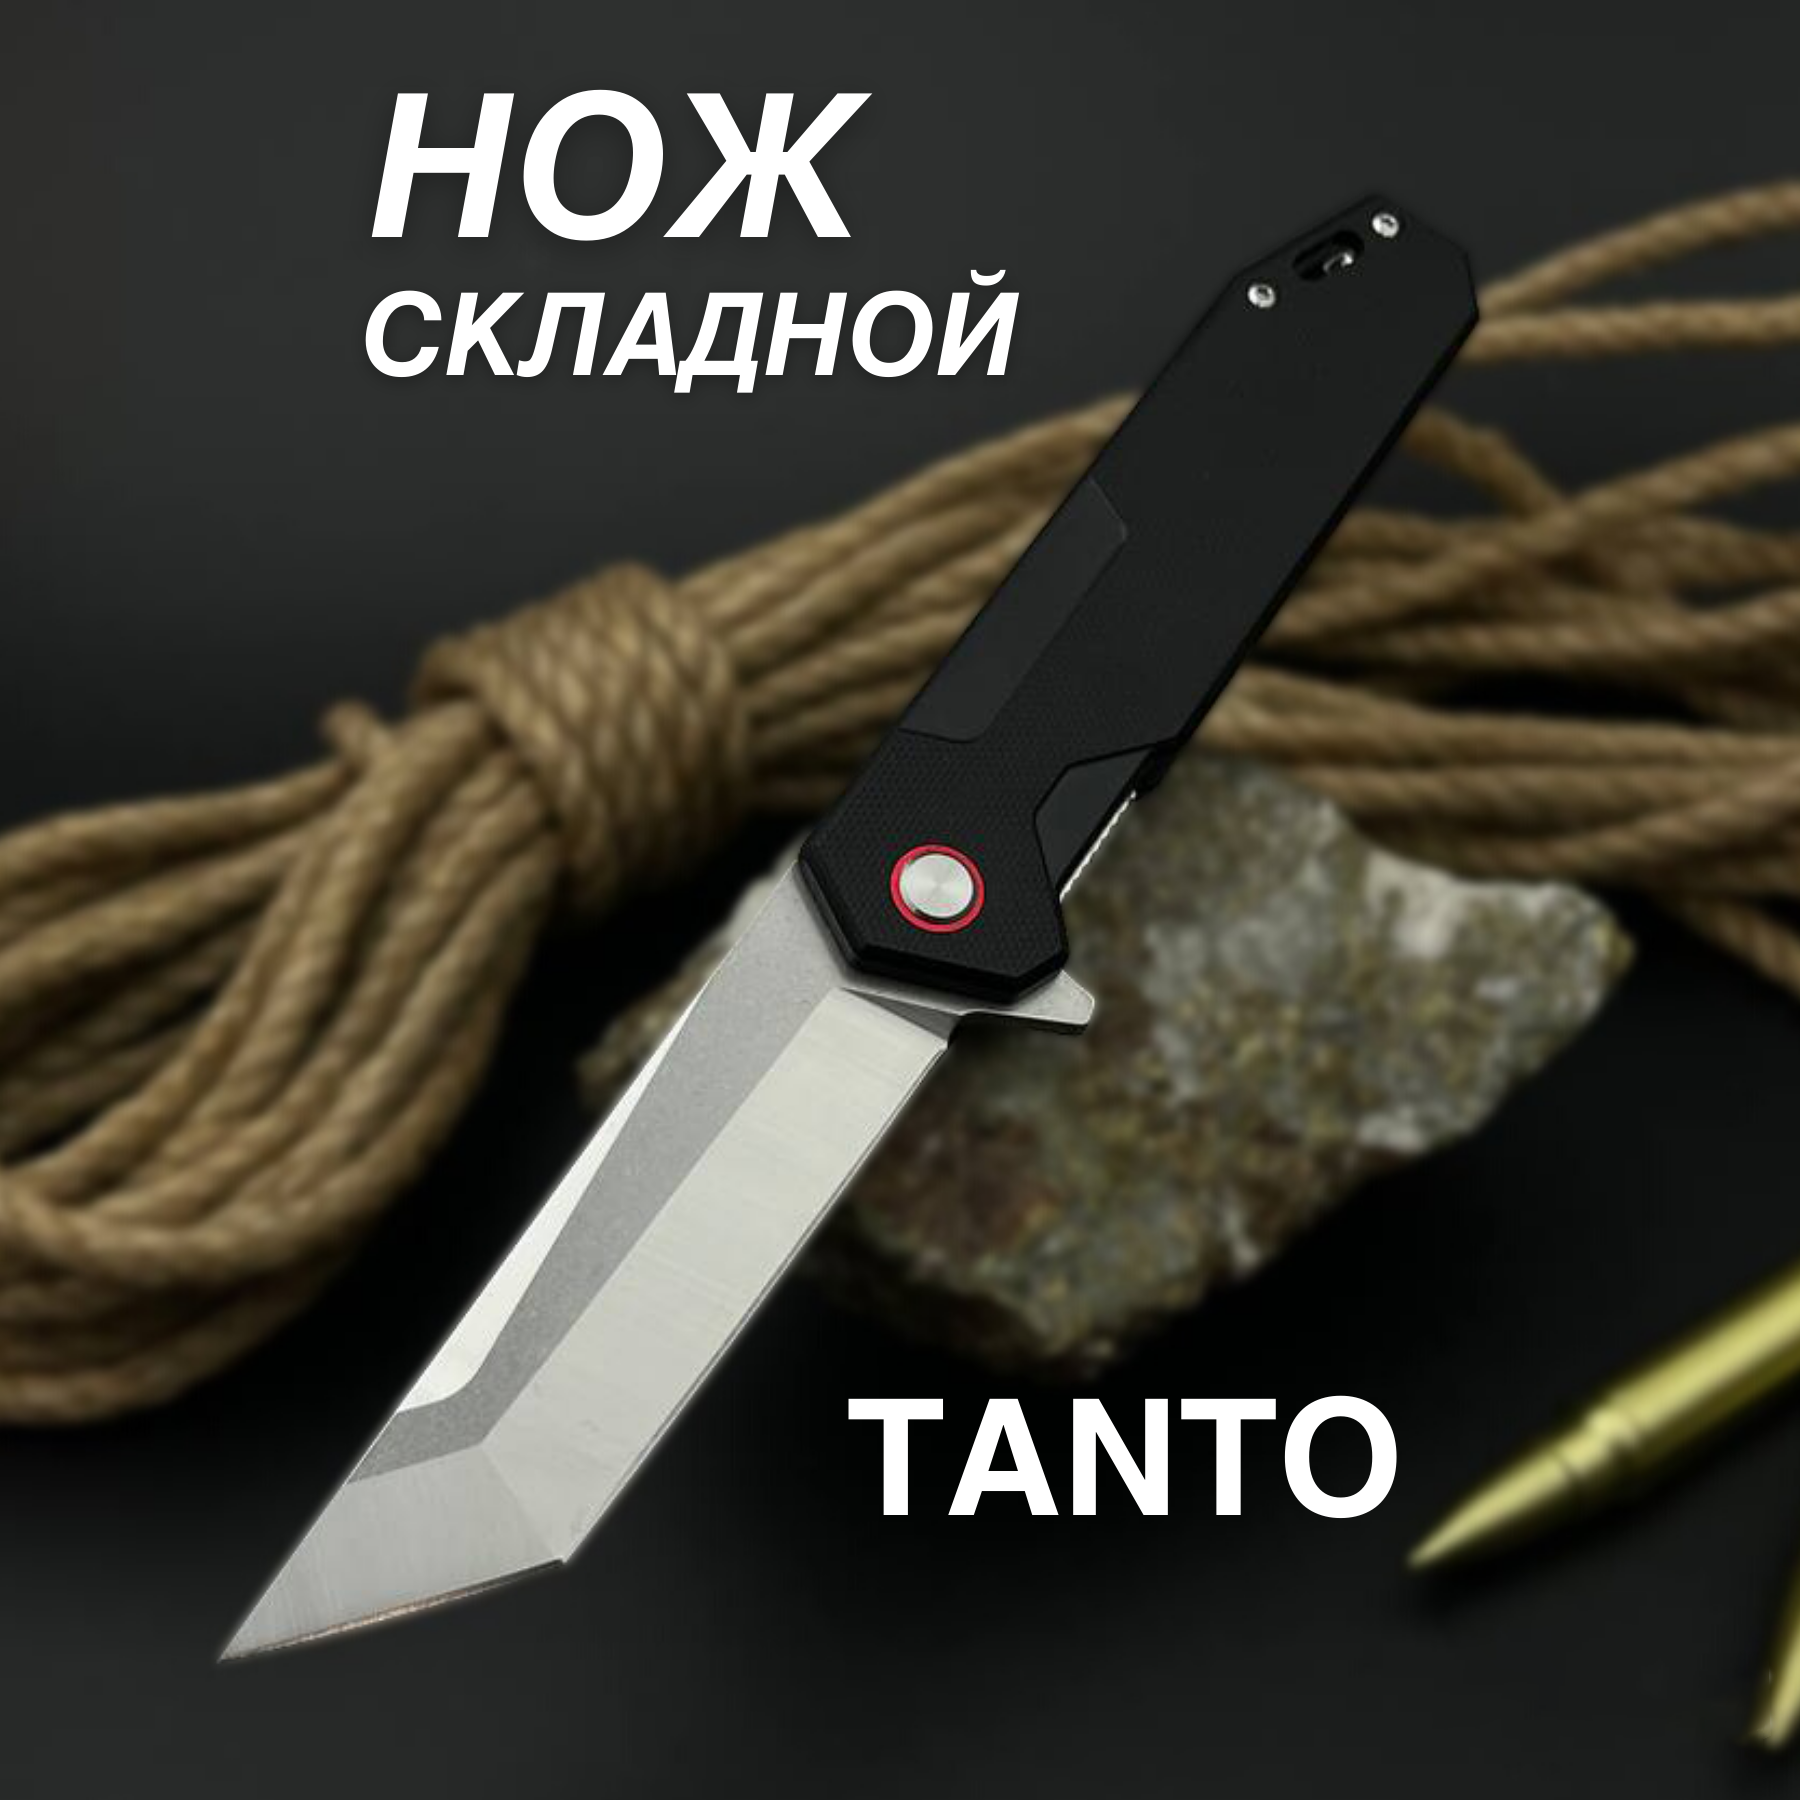 Складной нож ТТ 049 для туризма, охоты, рыбалки, черный, Танто, длина клинка 9 см